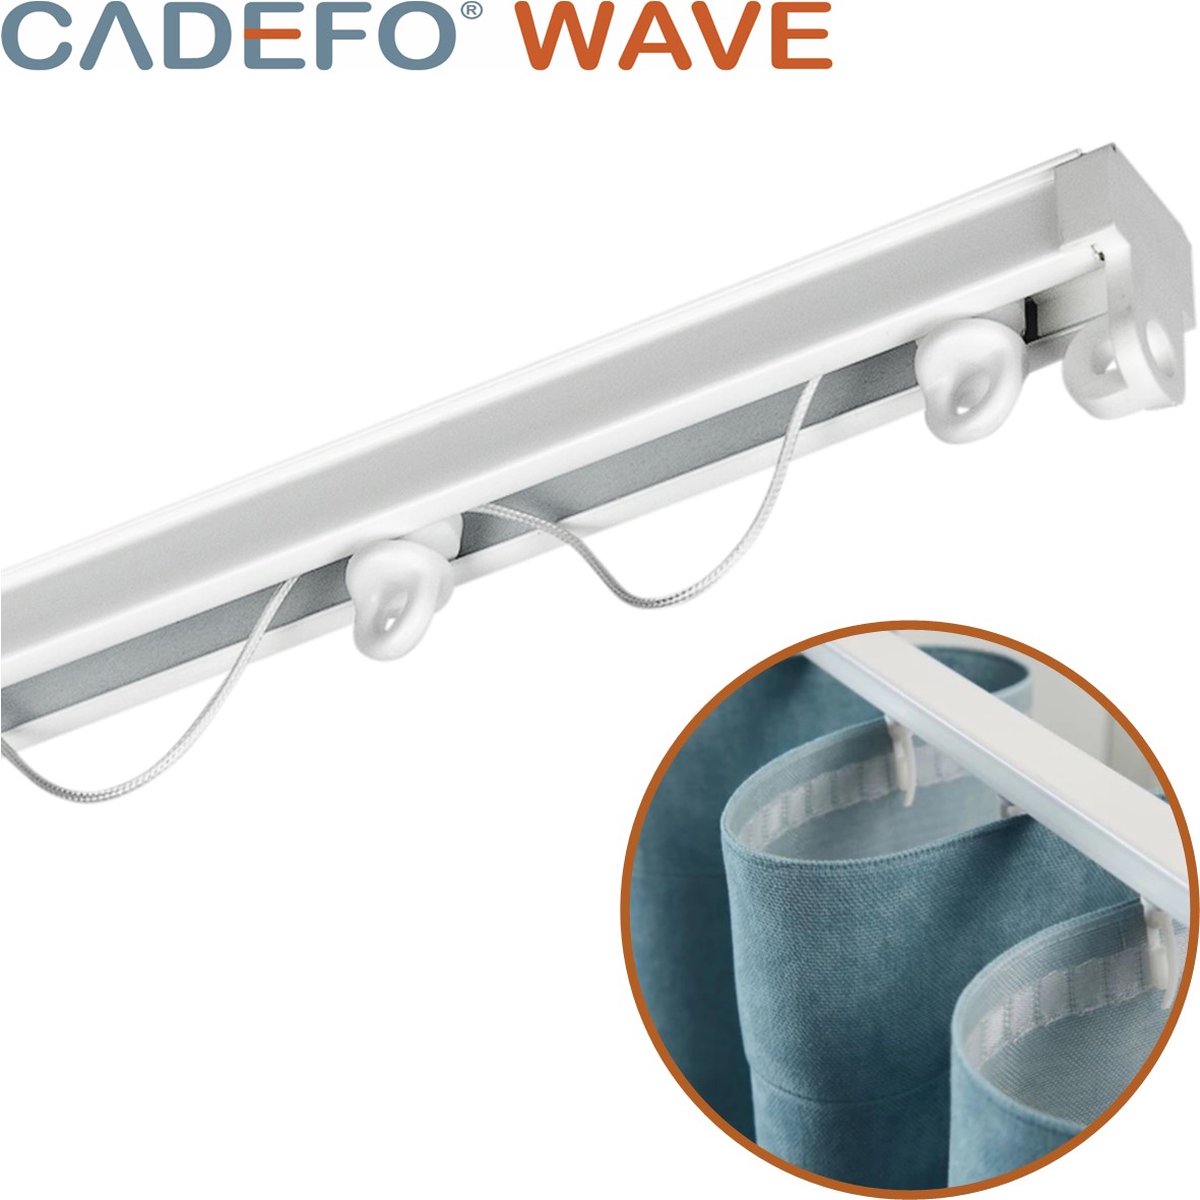 CADEFO WAVE (301 - 350 cm) Gordijnrails - Compleet op maat! - UIT 1 STUK - Leverbaar tot 6 meter - Plafondbevestiging - Lengte 314 cm